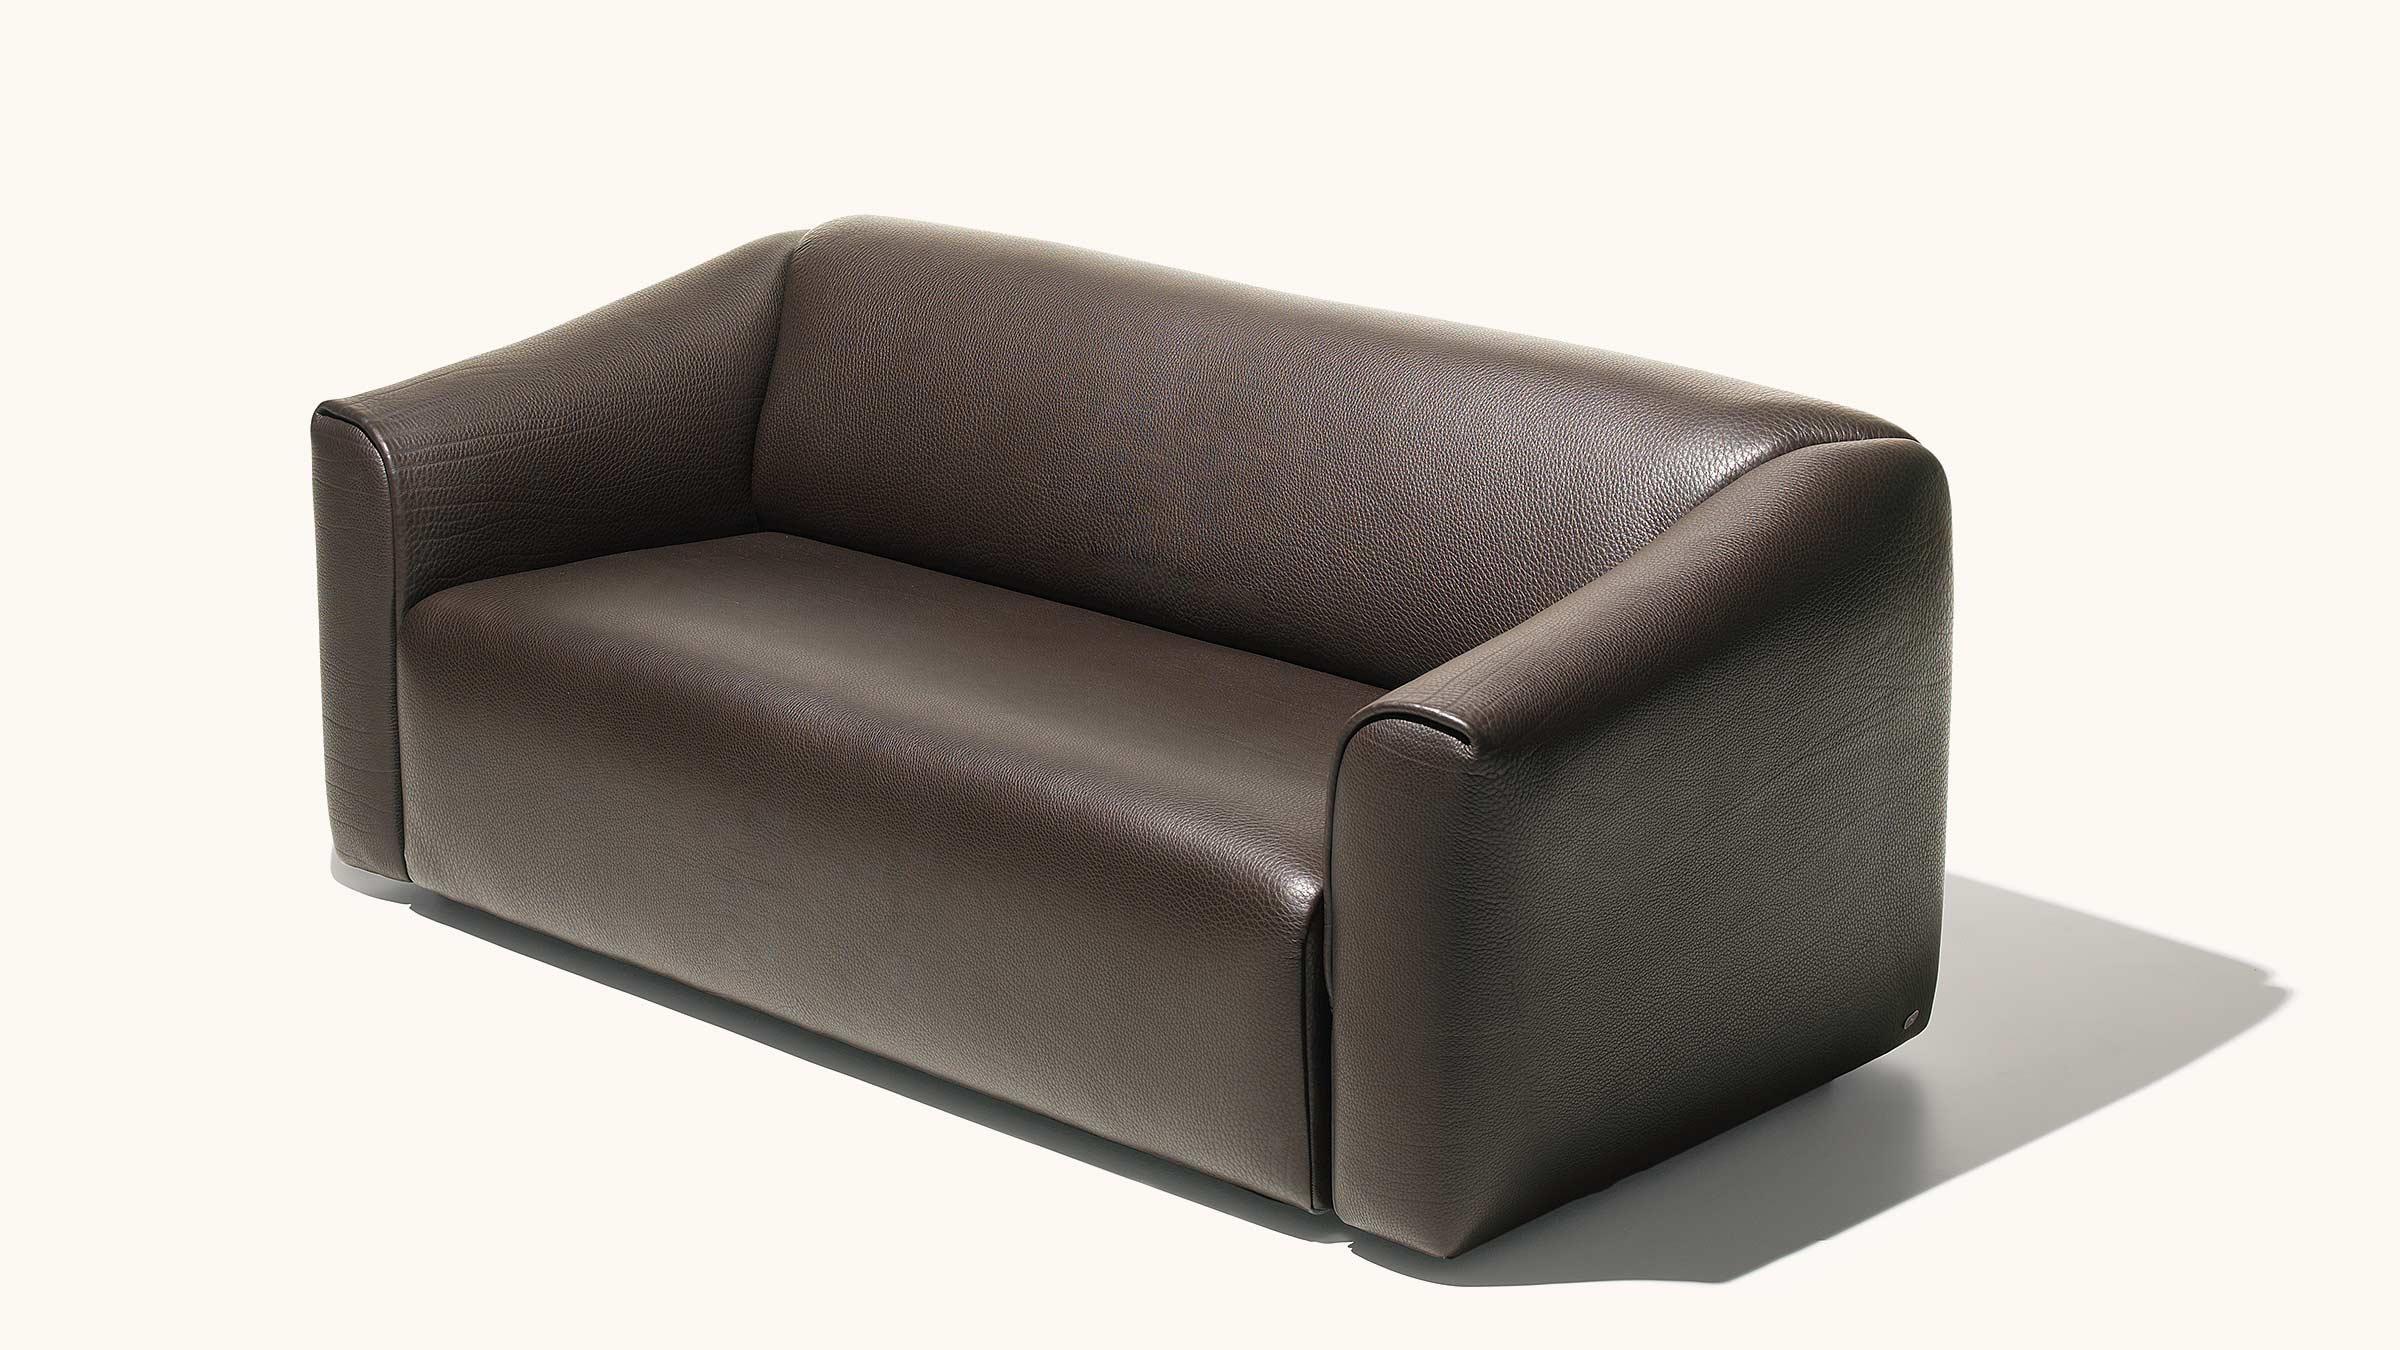 DS-47 est disponible en canapé deux et trois places, en fauteuil et en tabouret. Le cuir NECK de 5 mm d'épaisseur, reconnaissable à ses plis gras caractéristiques, lui confère une expression inimitable qui le rend facile à repérer. Pour toutes les